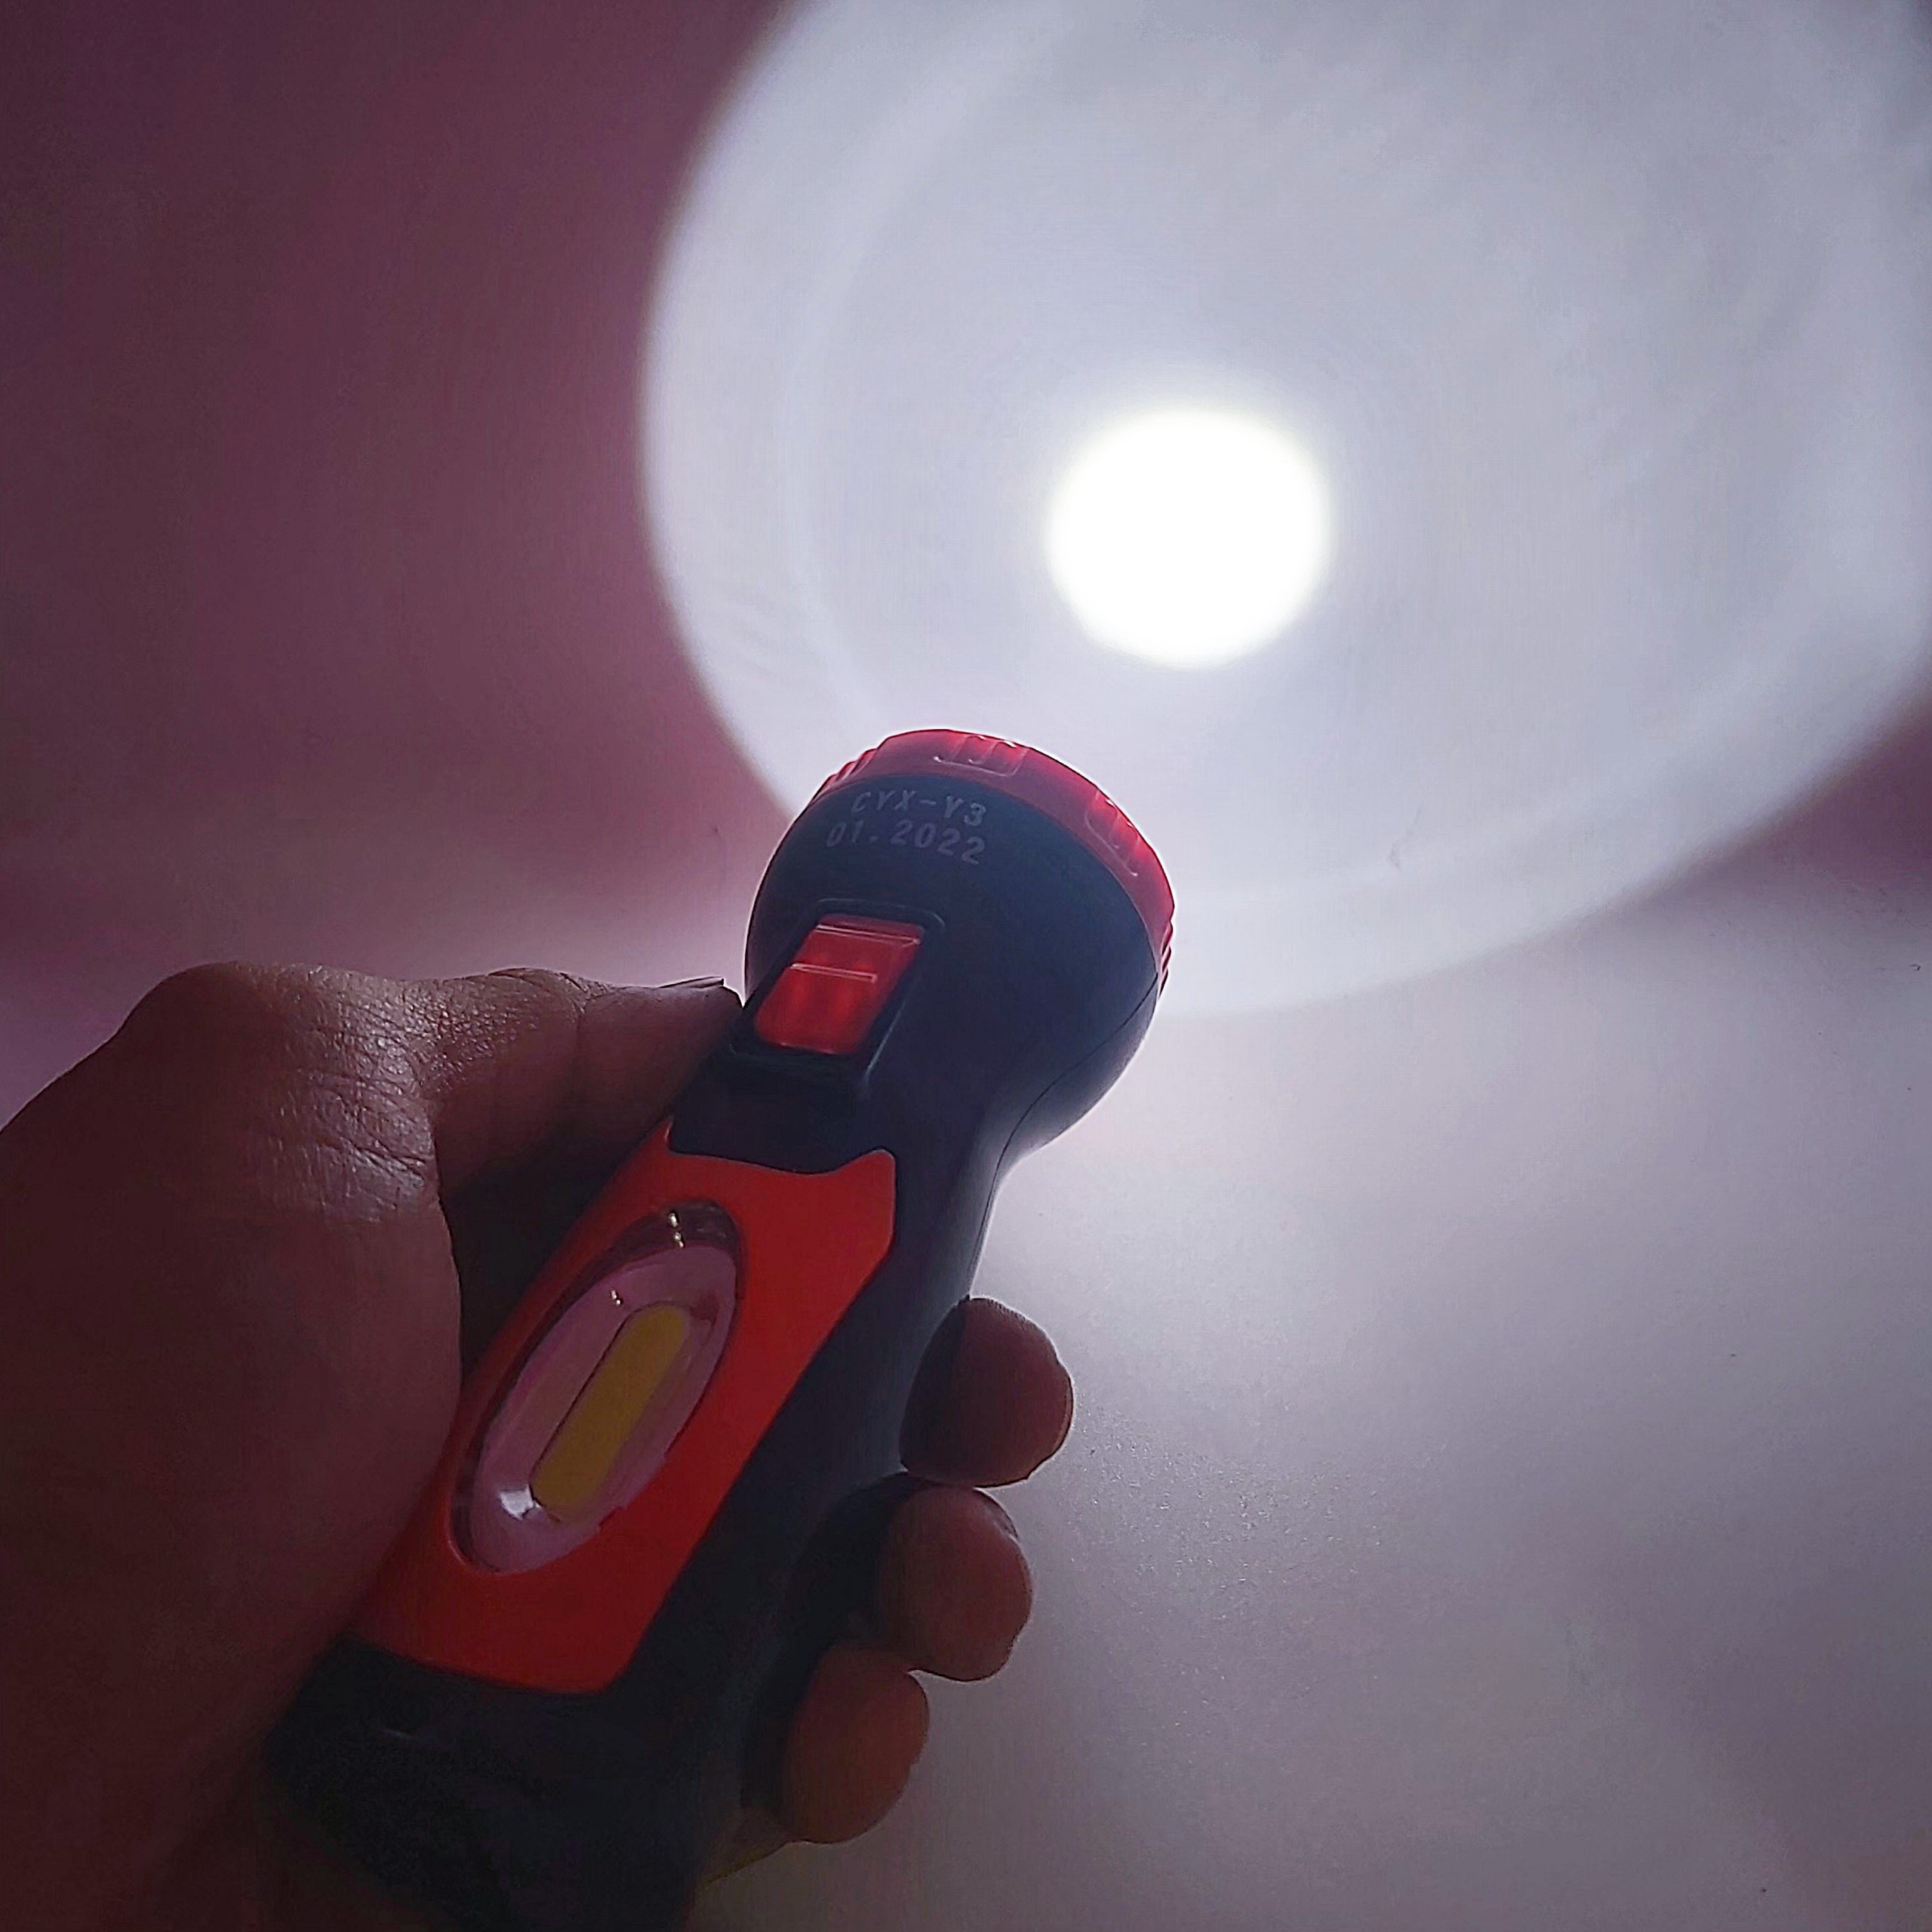 Đèn Pin sạc   2 chế độ loại tốt  dài 13 cm -  đèn pin siêu sáng - đèn pin mini - den pin cam tay